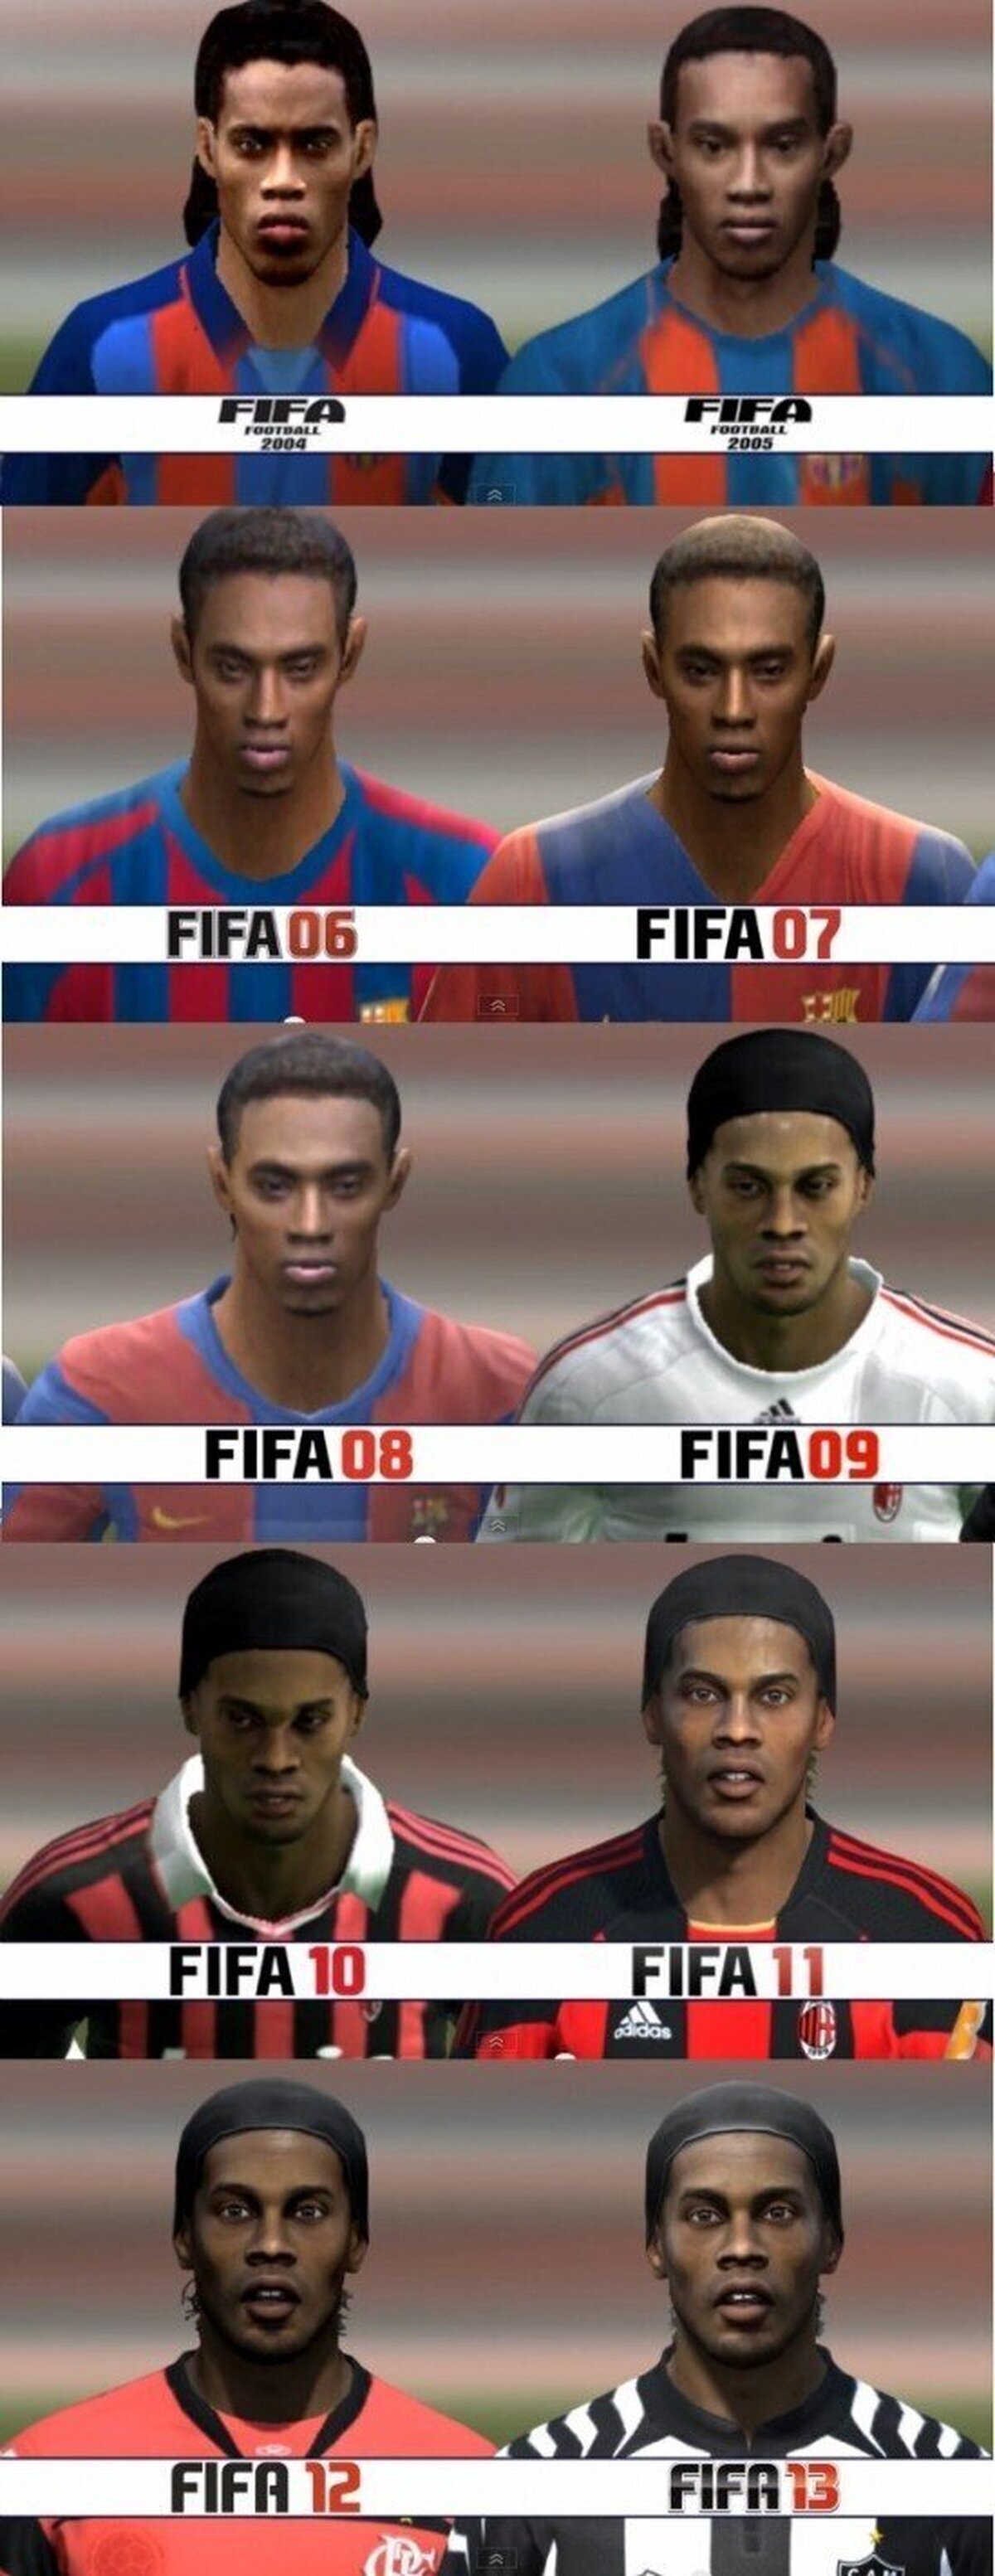 Ronaldinho FIFA04 - FIFA13